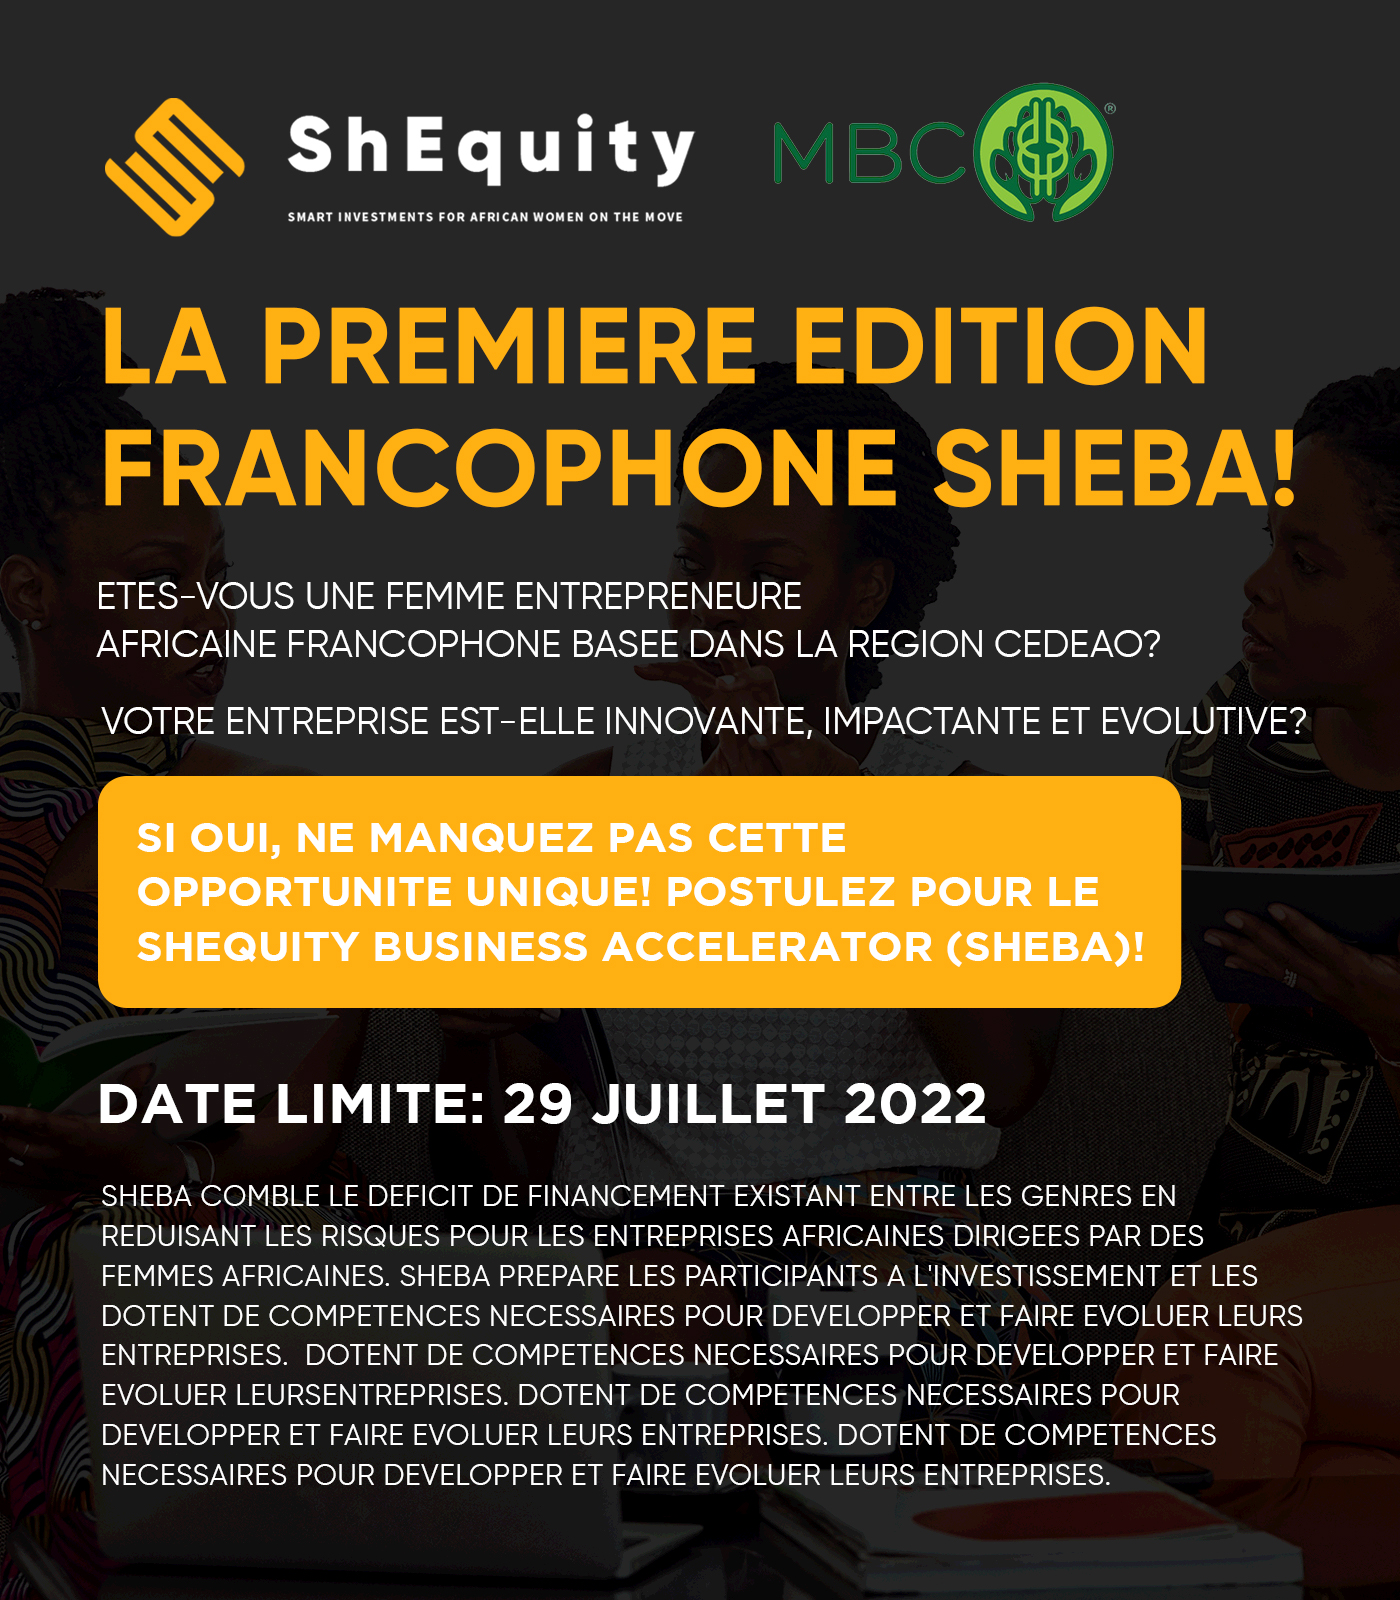 ShEquity Lance la Première Edition Francophone de son Program d’accélération, SHEBA !